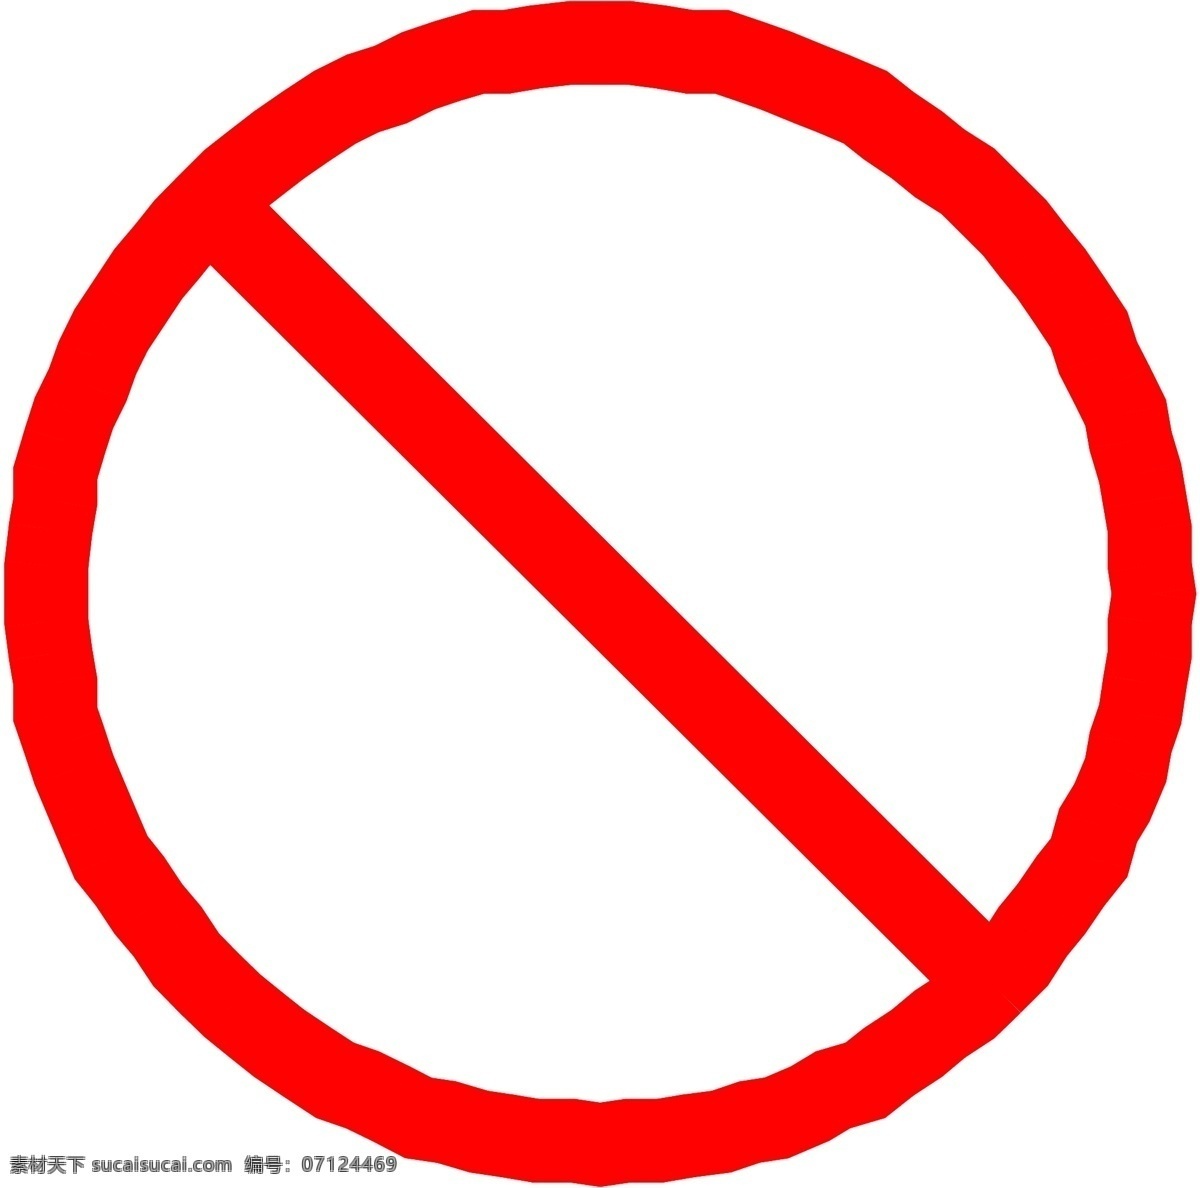 标识 标识标志图标 标志 禁止标志 禁止 矢量 禁止通行标志 卡通 矢量图库 模板下载 图标 示意牌 指示牌 示意图 指示图 图形图标 psd源文件